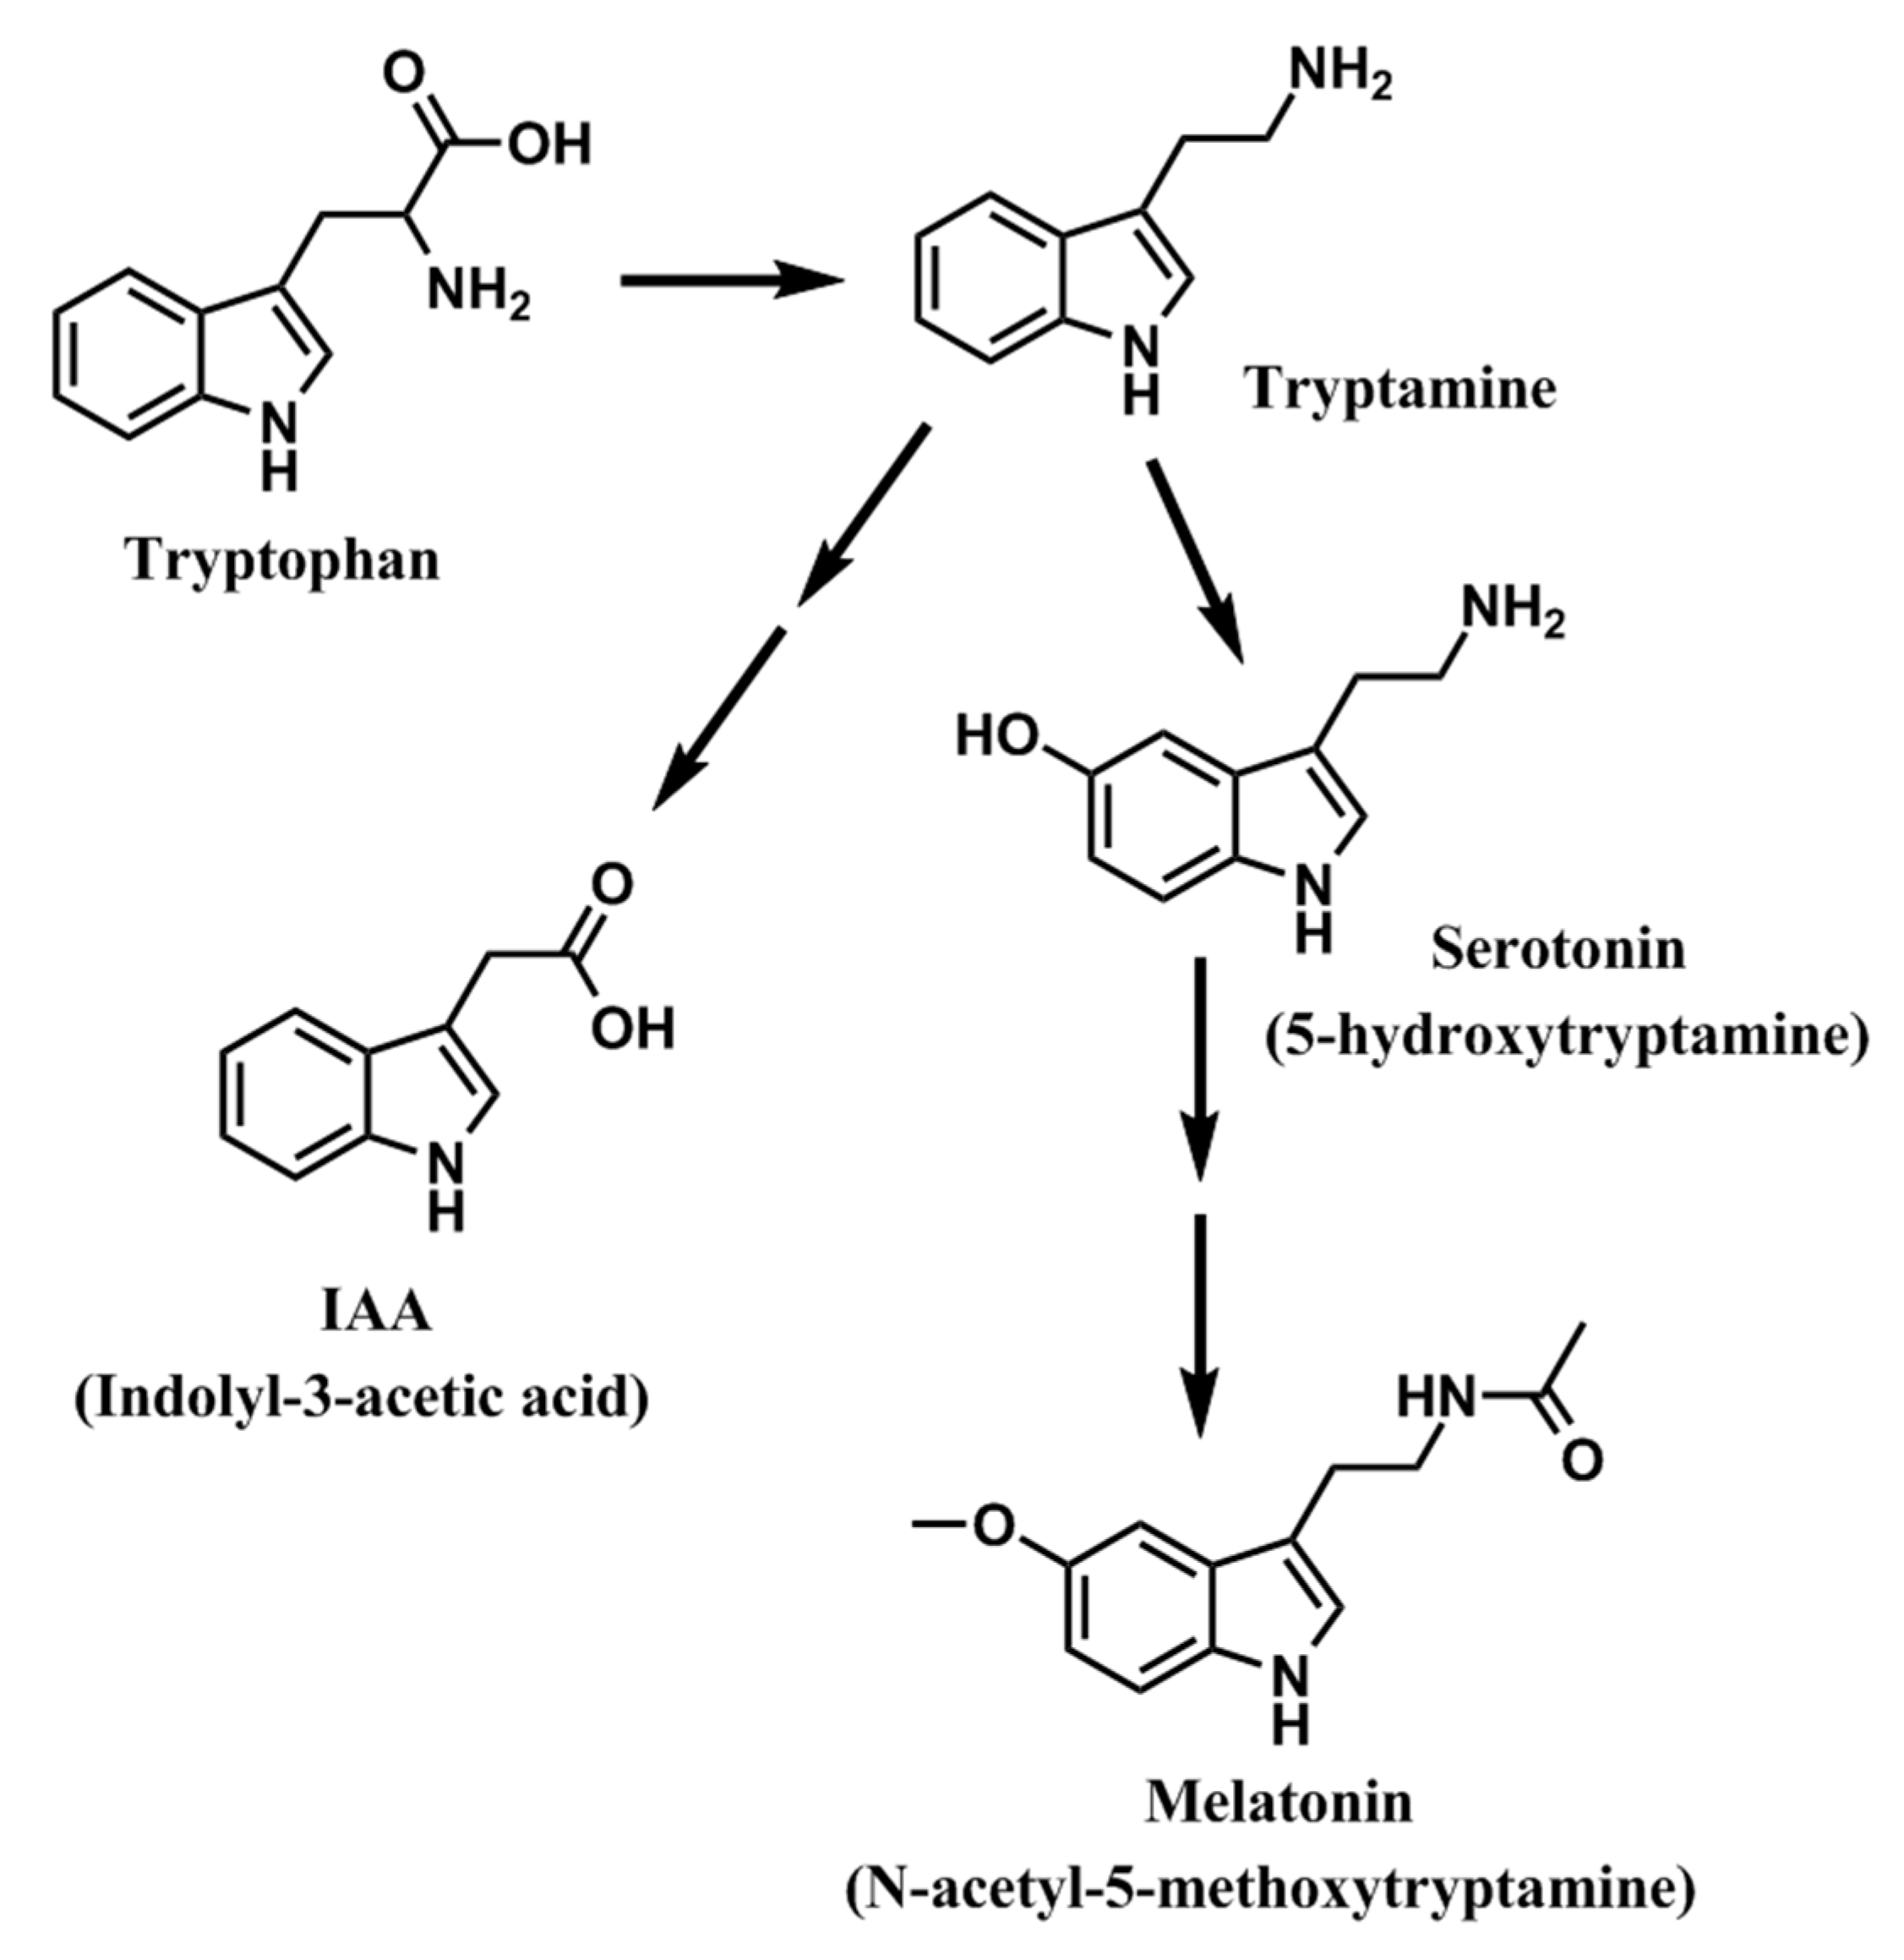 Синтез мелатонина